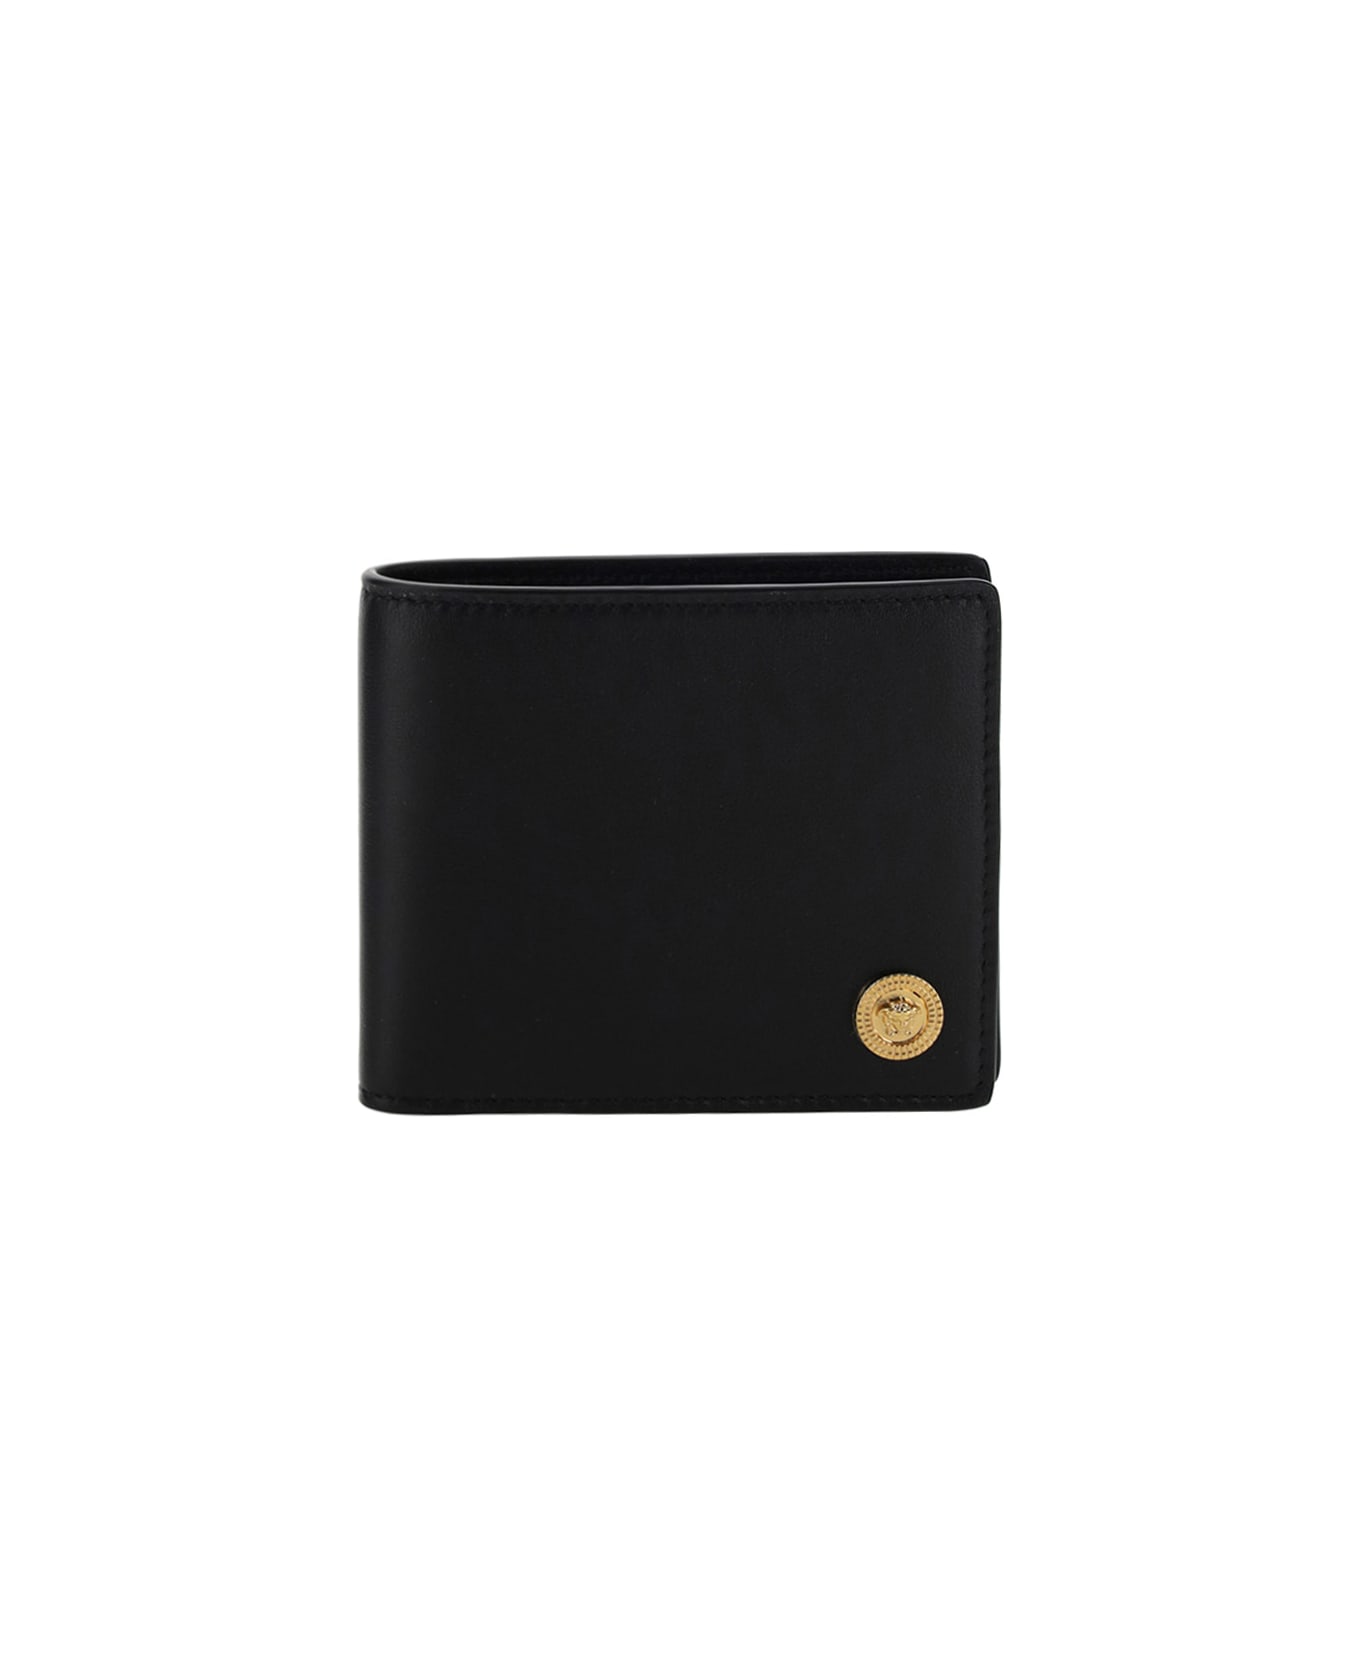 Versace Wallet - Nero/oro Versace 財布